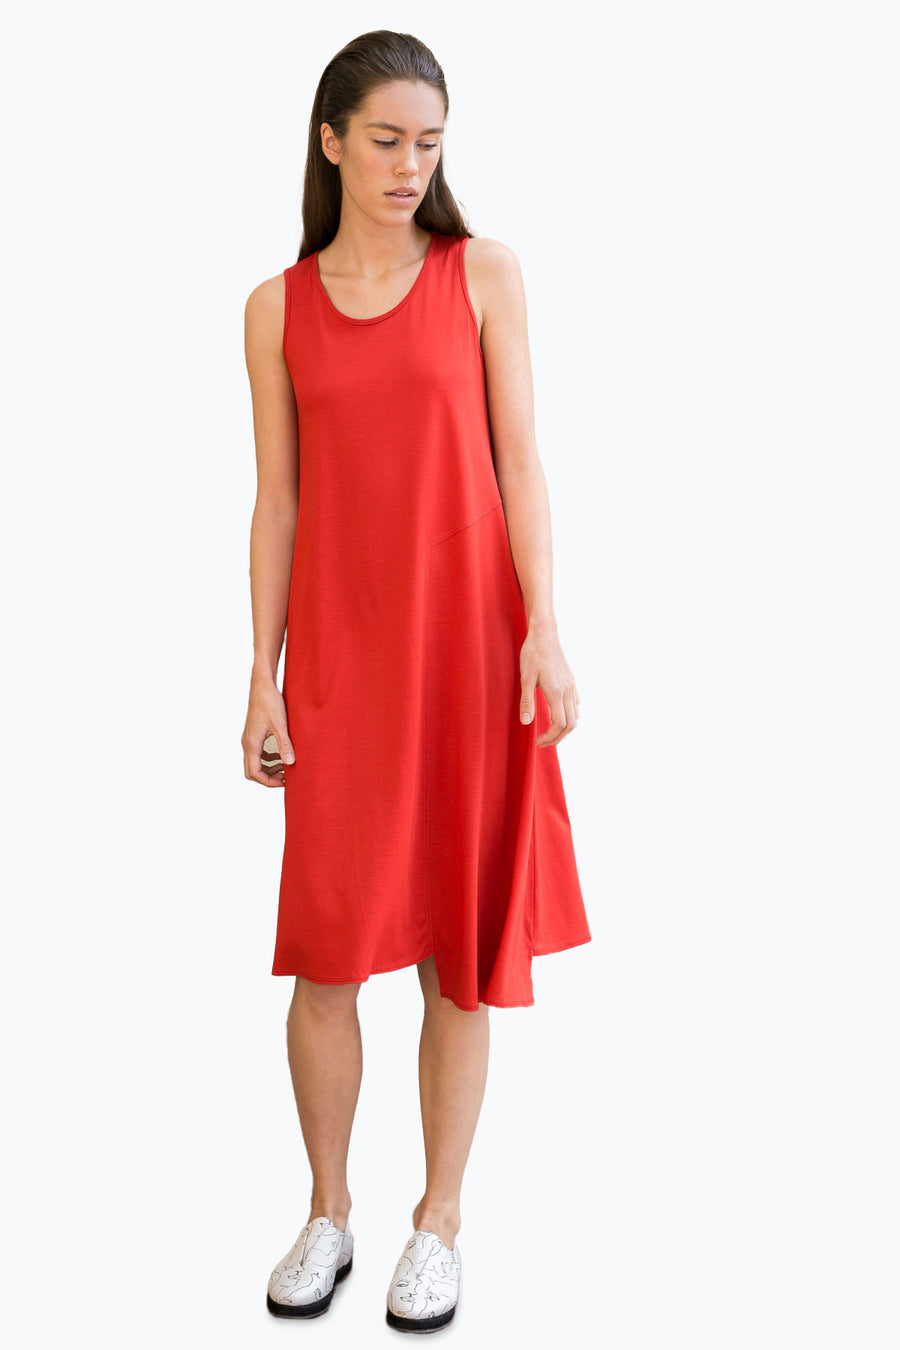 Jil Dress - Red (US 8, 10)